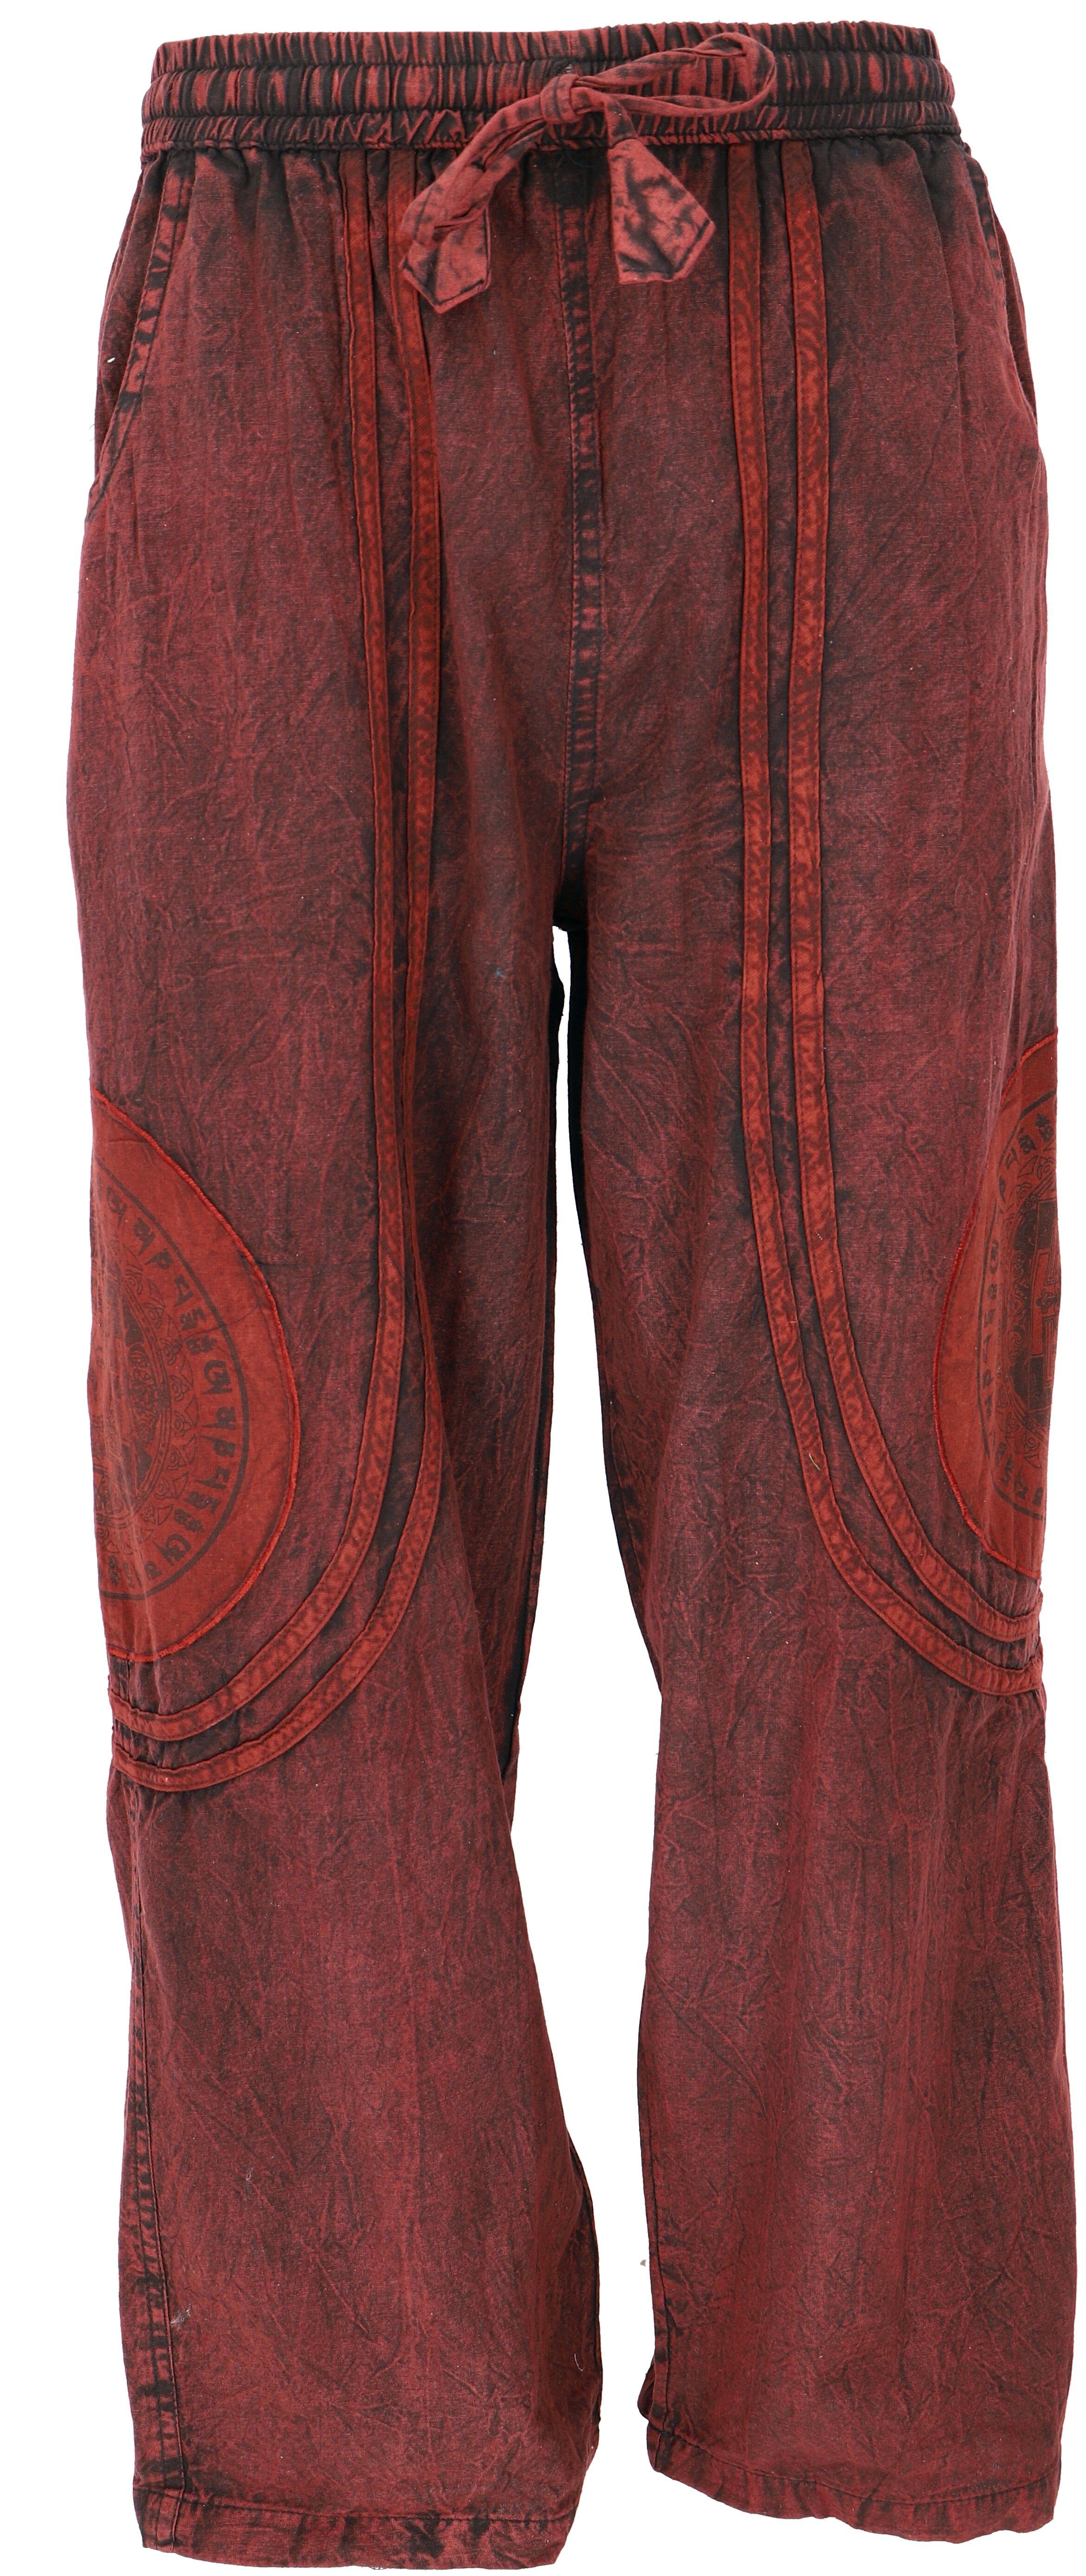 Guru-Shop Relaxhose Stonewash Yogahose, Unisex Baumwoll-Goa-Hose.. Retro, Ethno Style, alternative Bekleidung rot